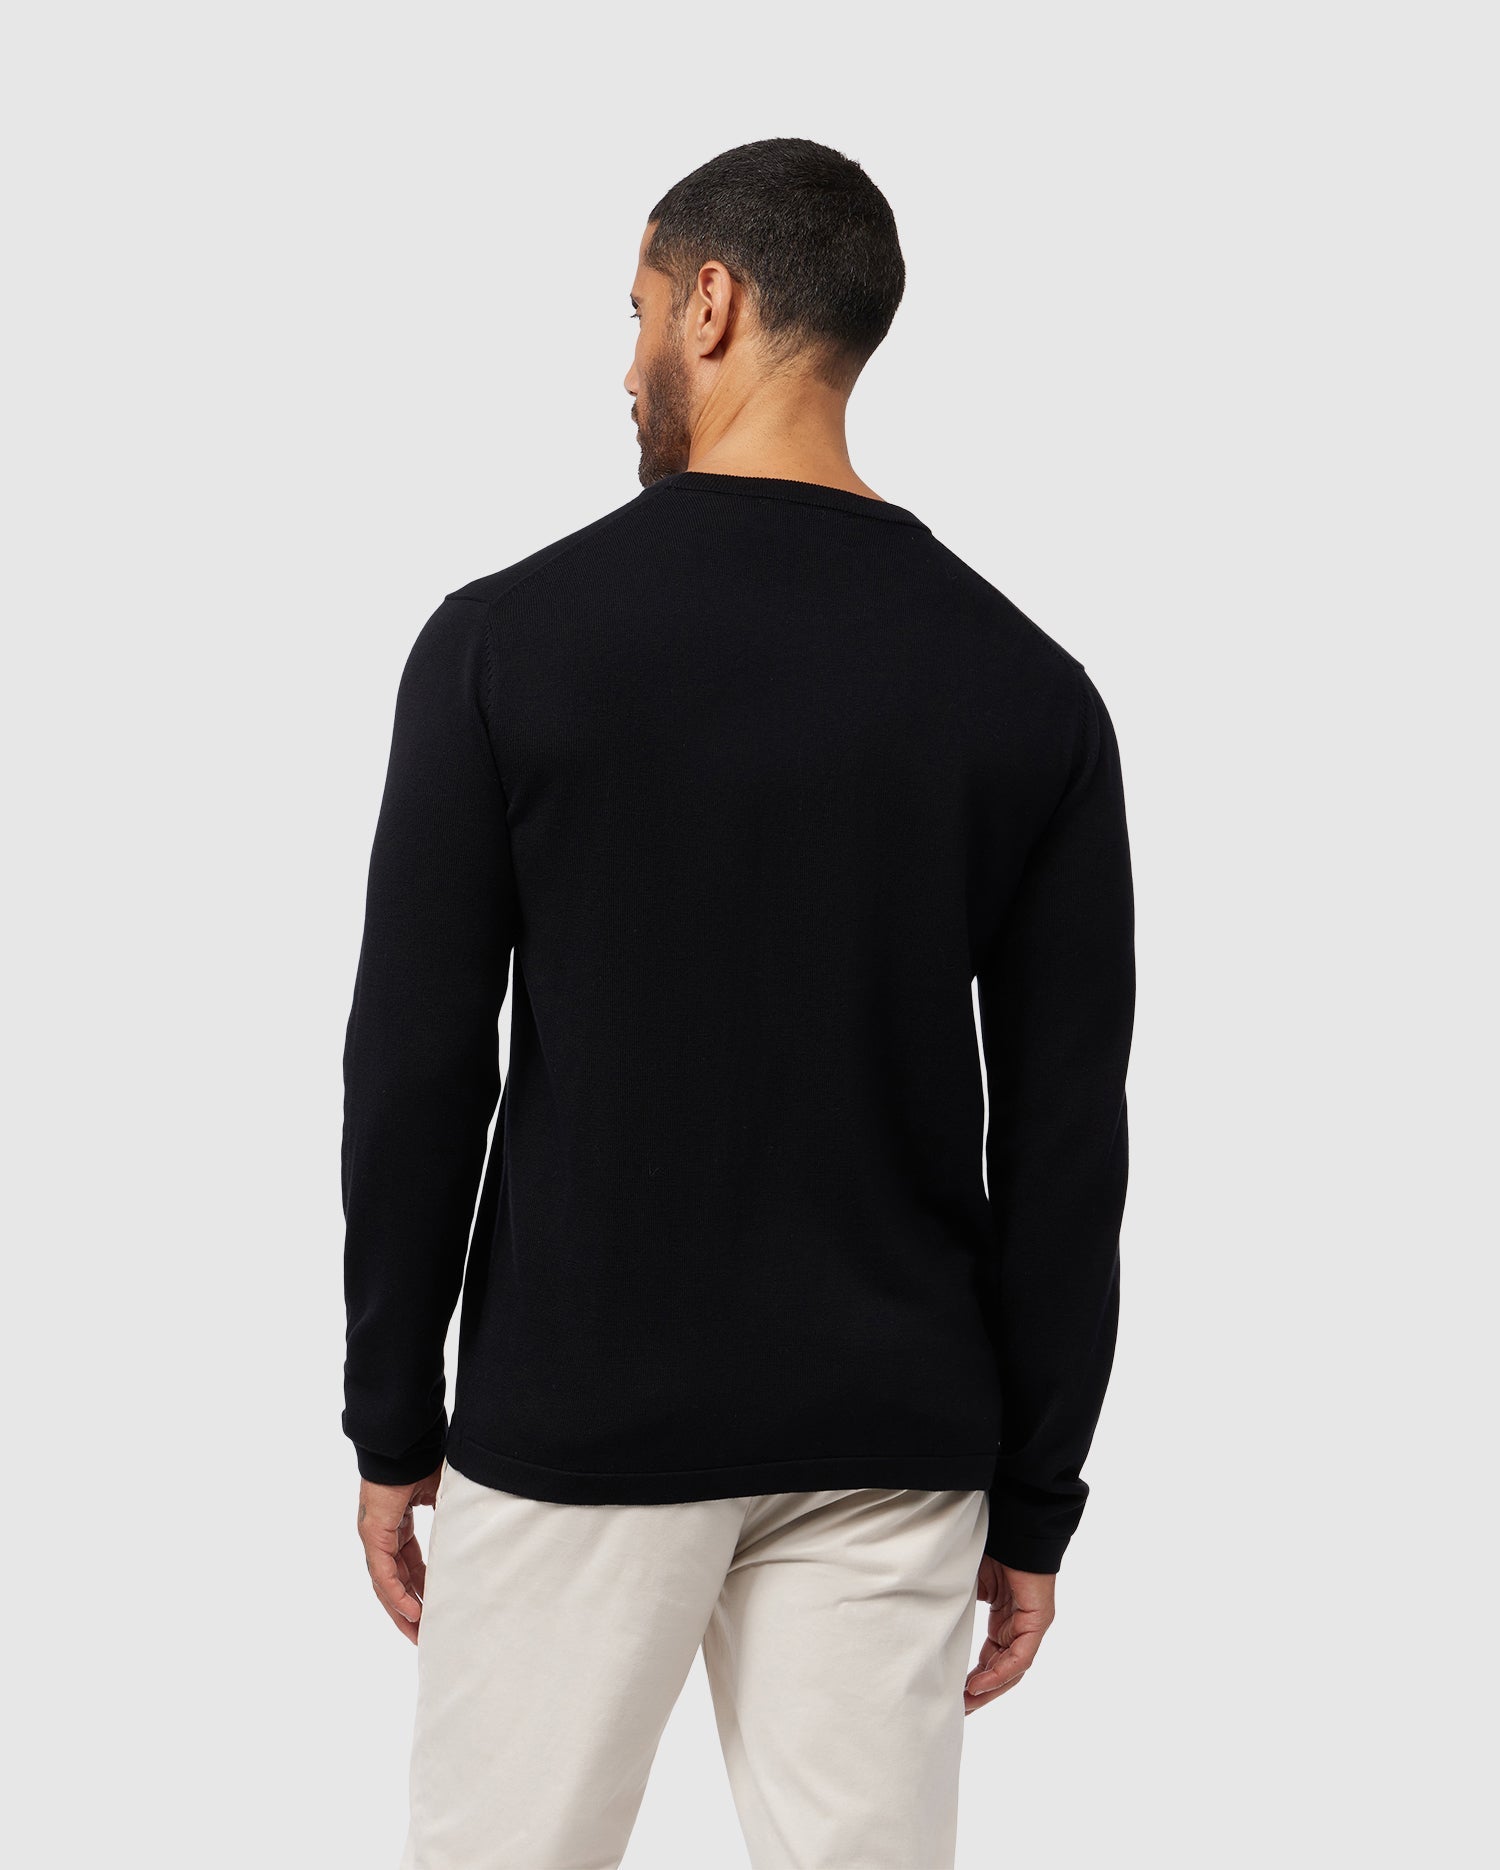 kqetty Knit Sweater Men Men's Solid Color Cozy Round Neck Plain